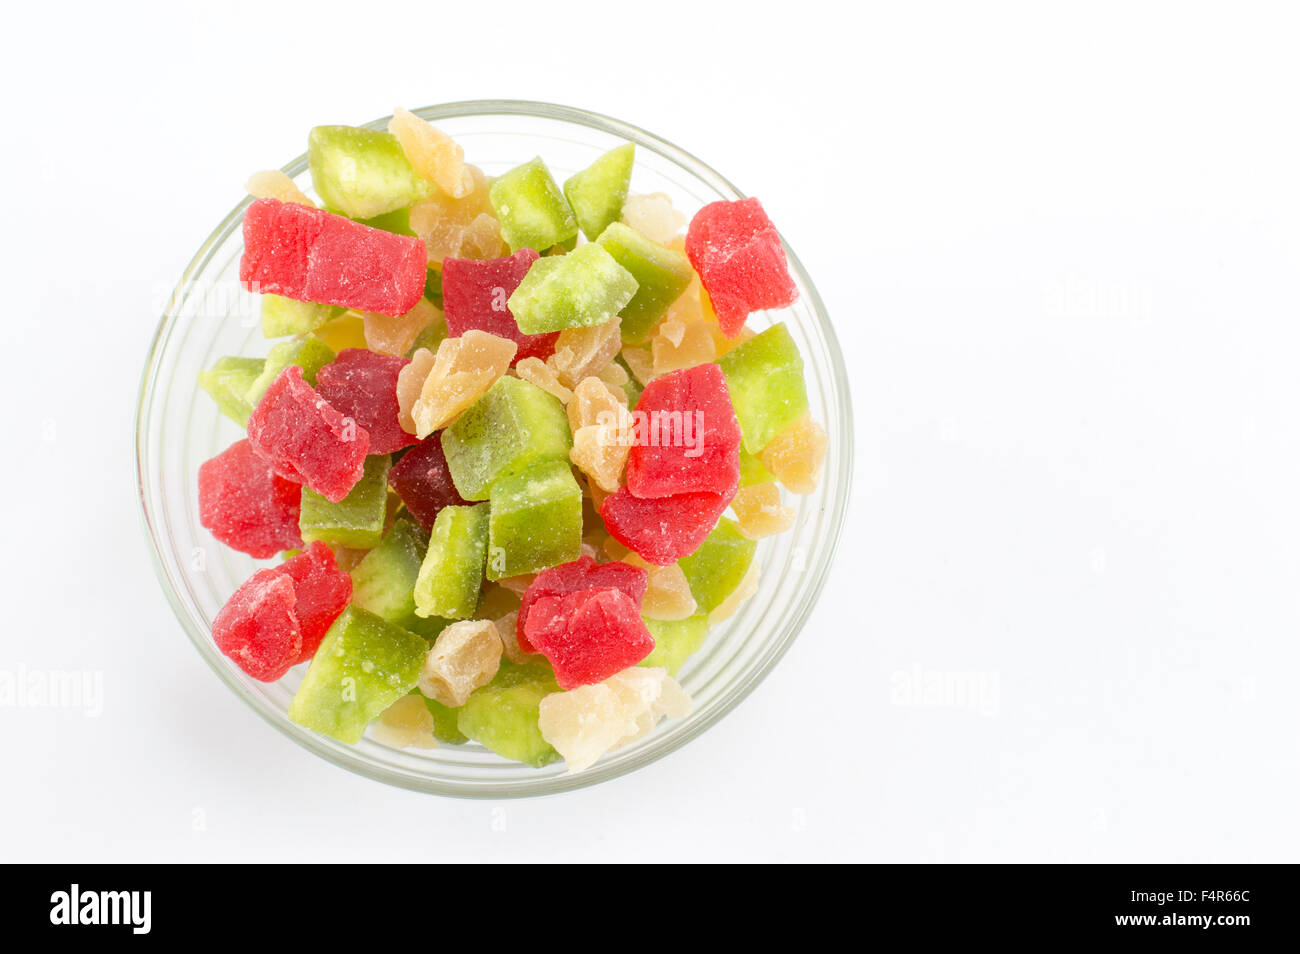 Fruits séchés dans un bol on white Banque D'Images